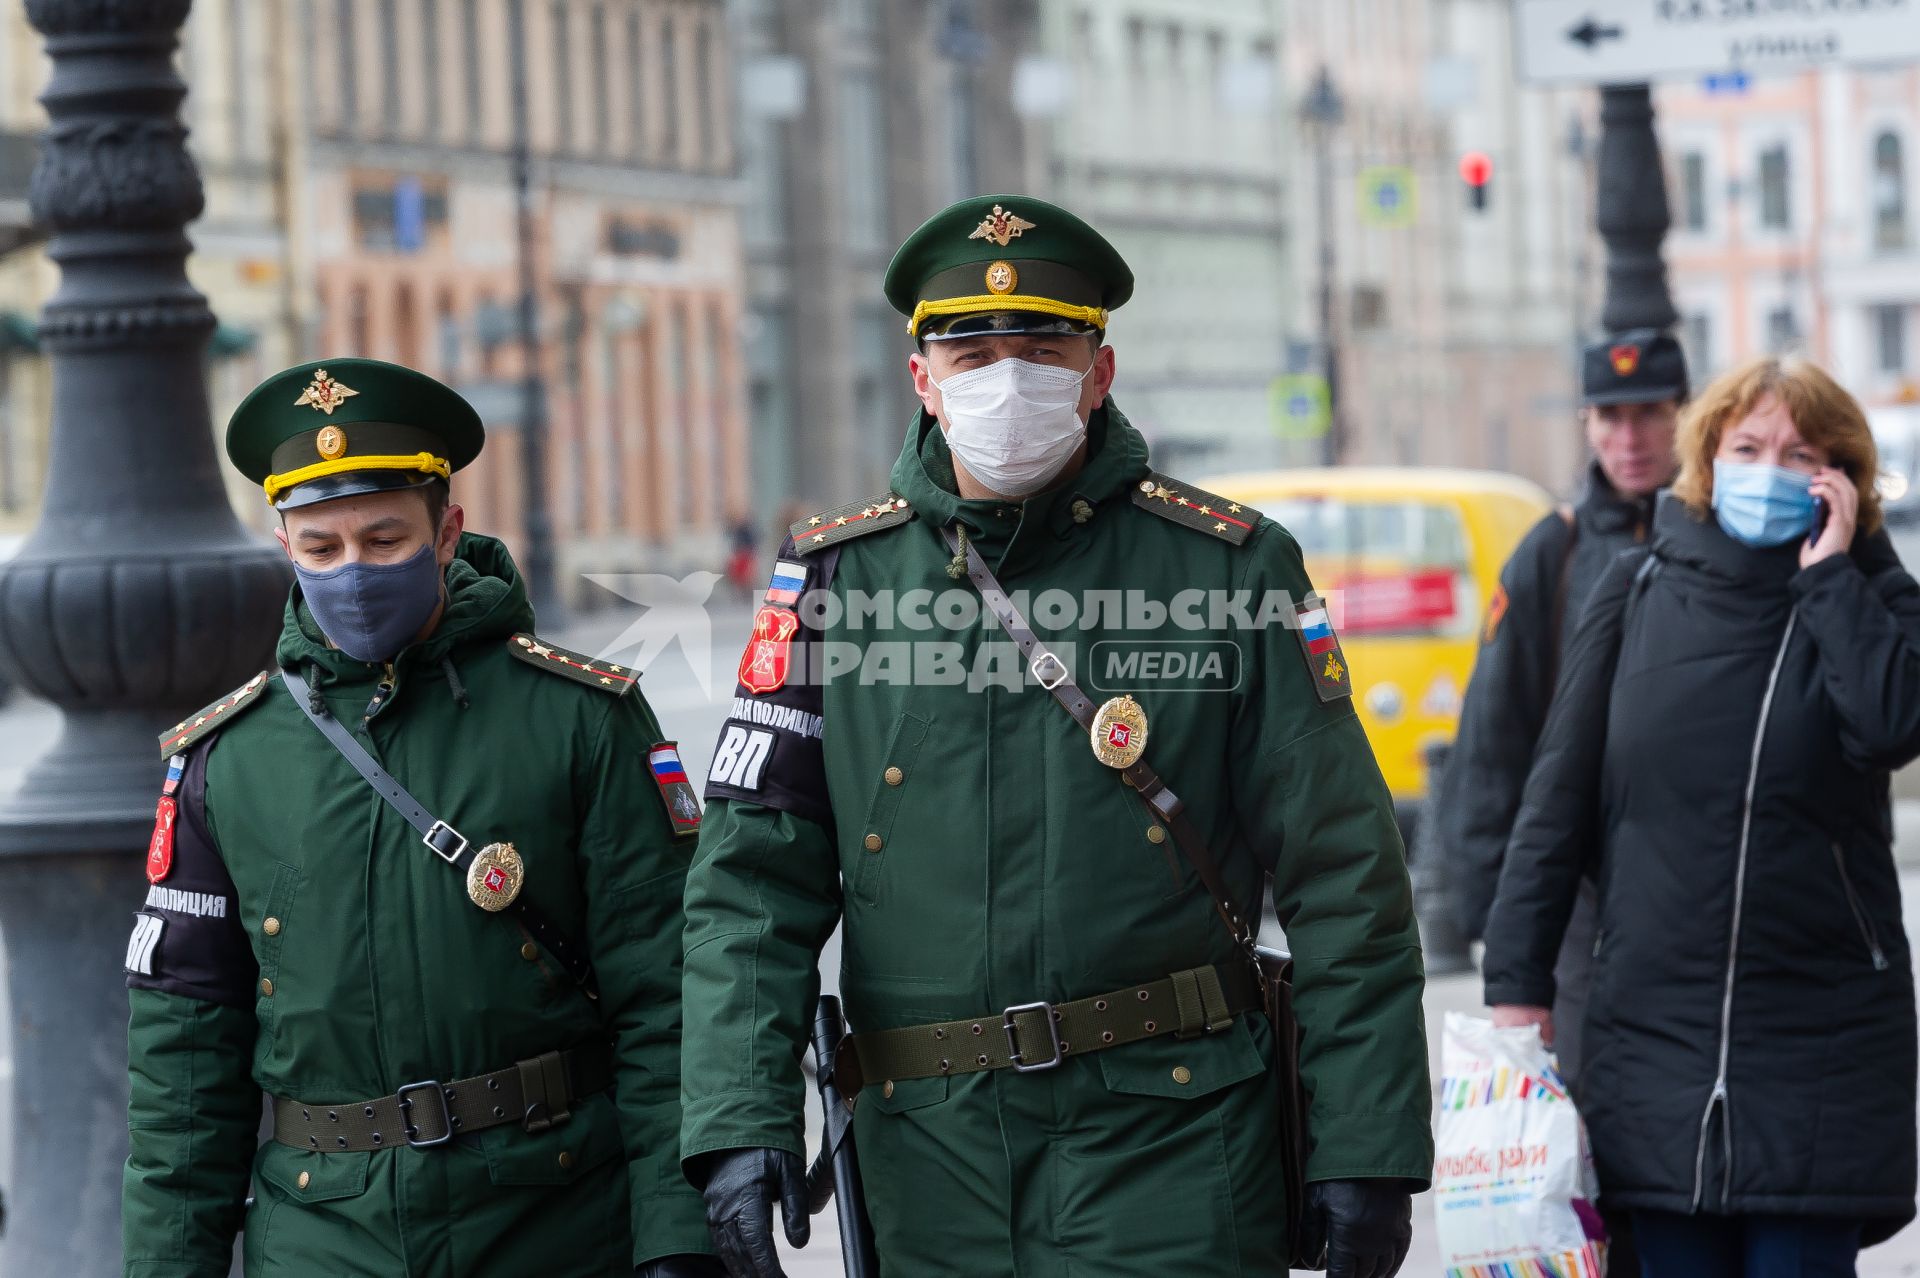 Санкт-Петербург. Военнослужащие в медицинских масках.